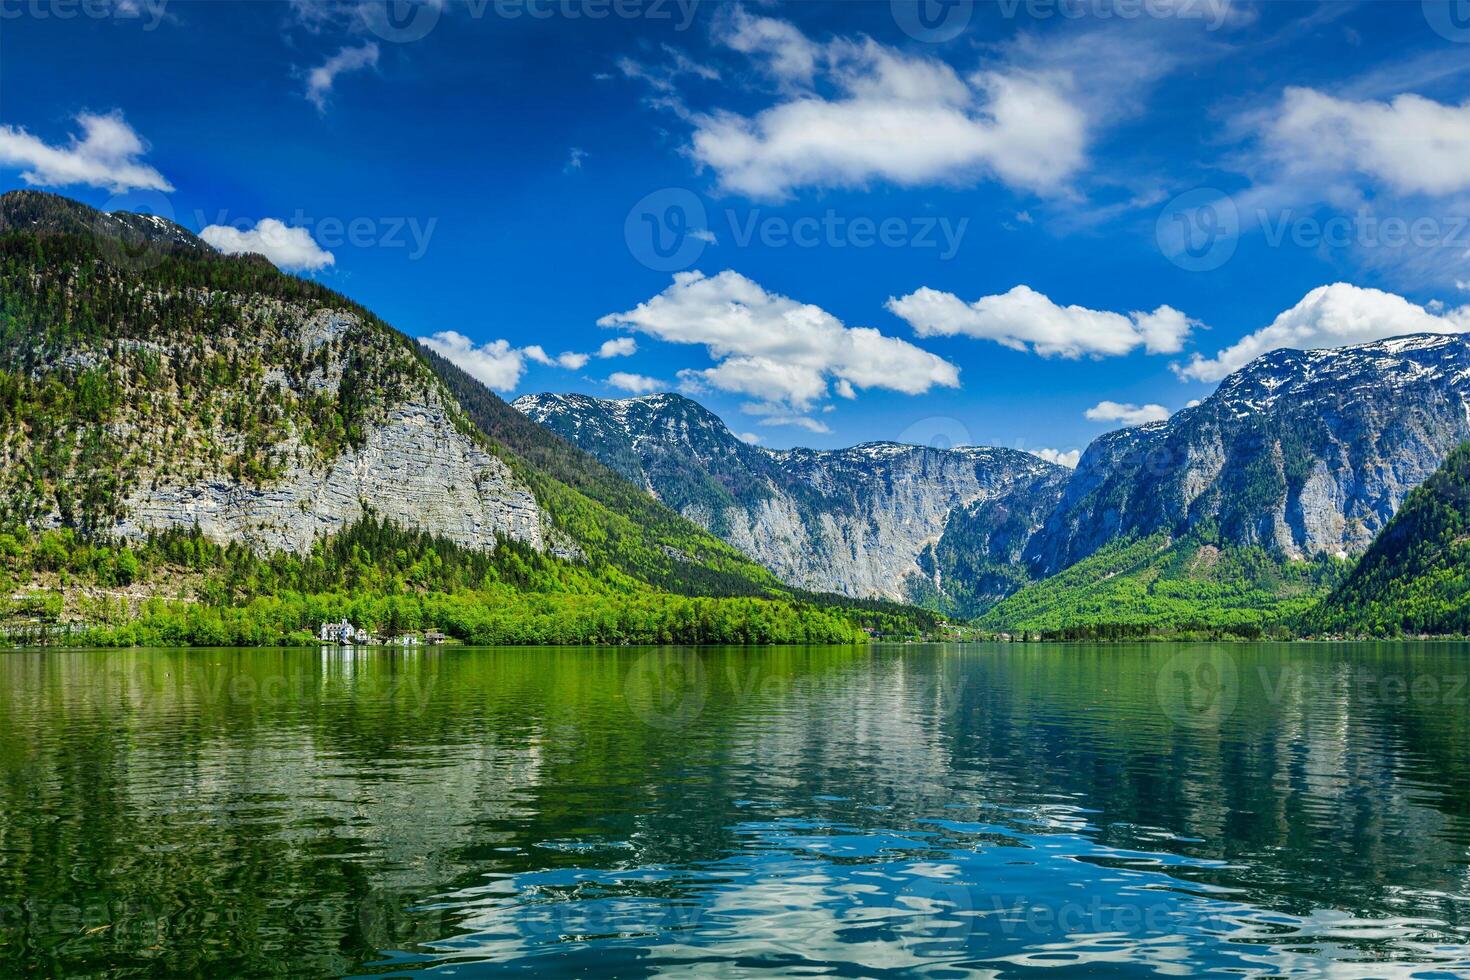 hallstatter zien berg meer in Oostenrijk foto